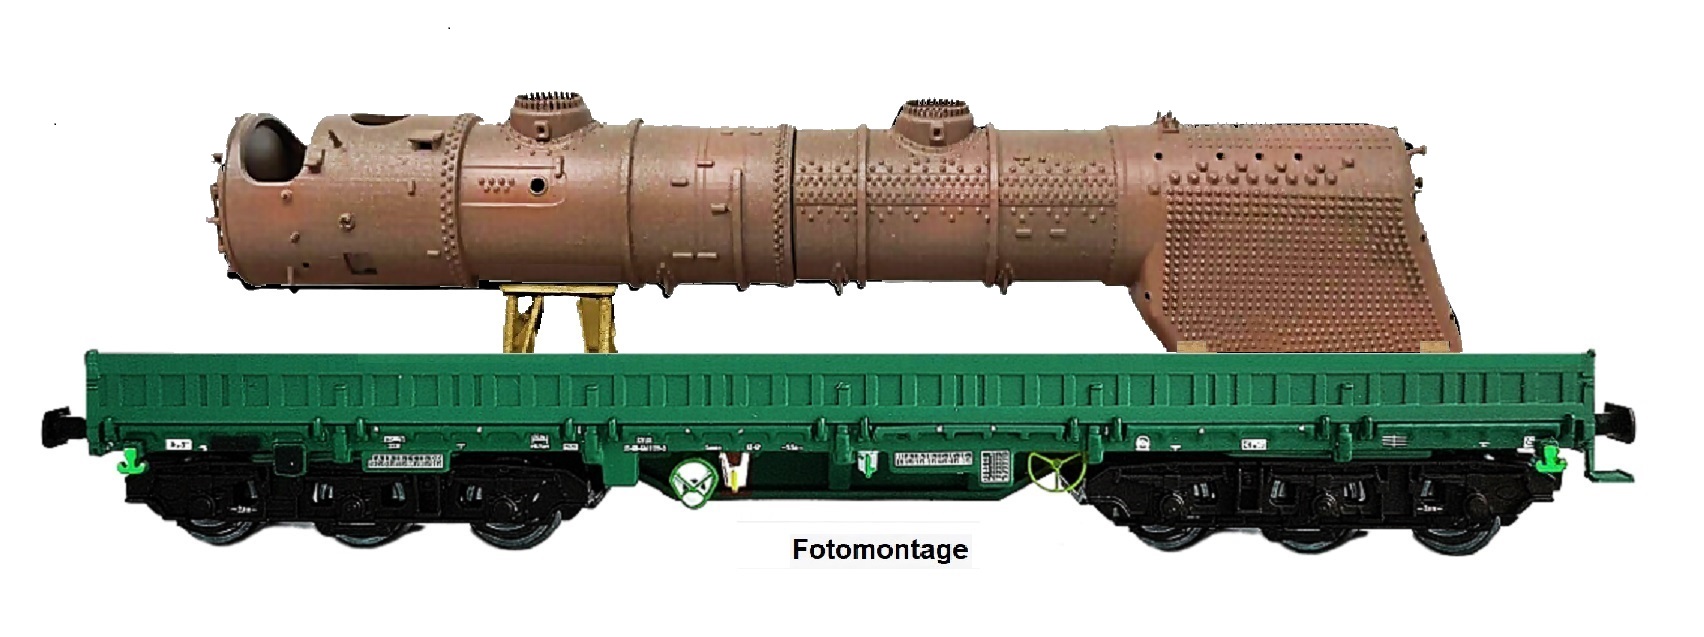 NPE Modellbau NW22942 - H0 - Schwerlastwagen Samms als Bahndienstwagen 'RAW Meinigen' mit Reko-Kessel, DB, Ep. IV - Exklusivmodell